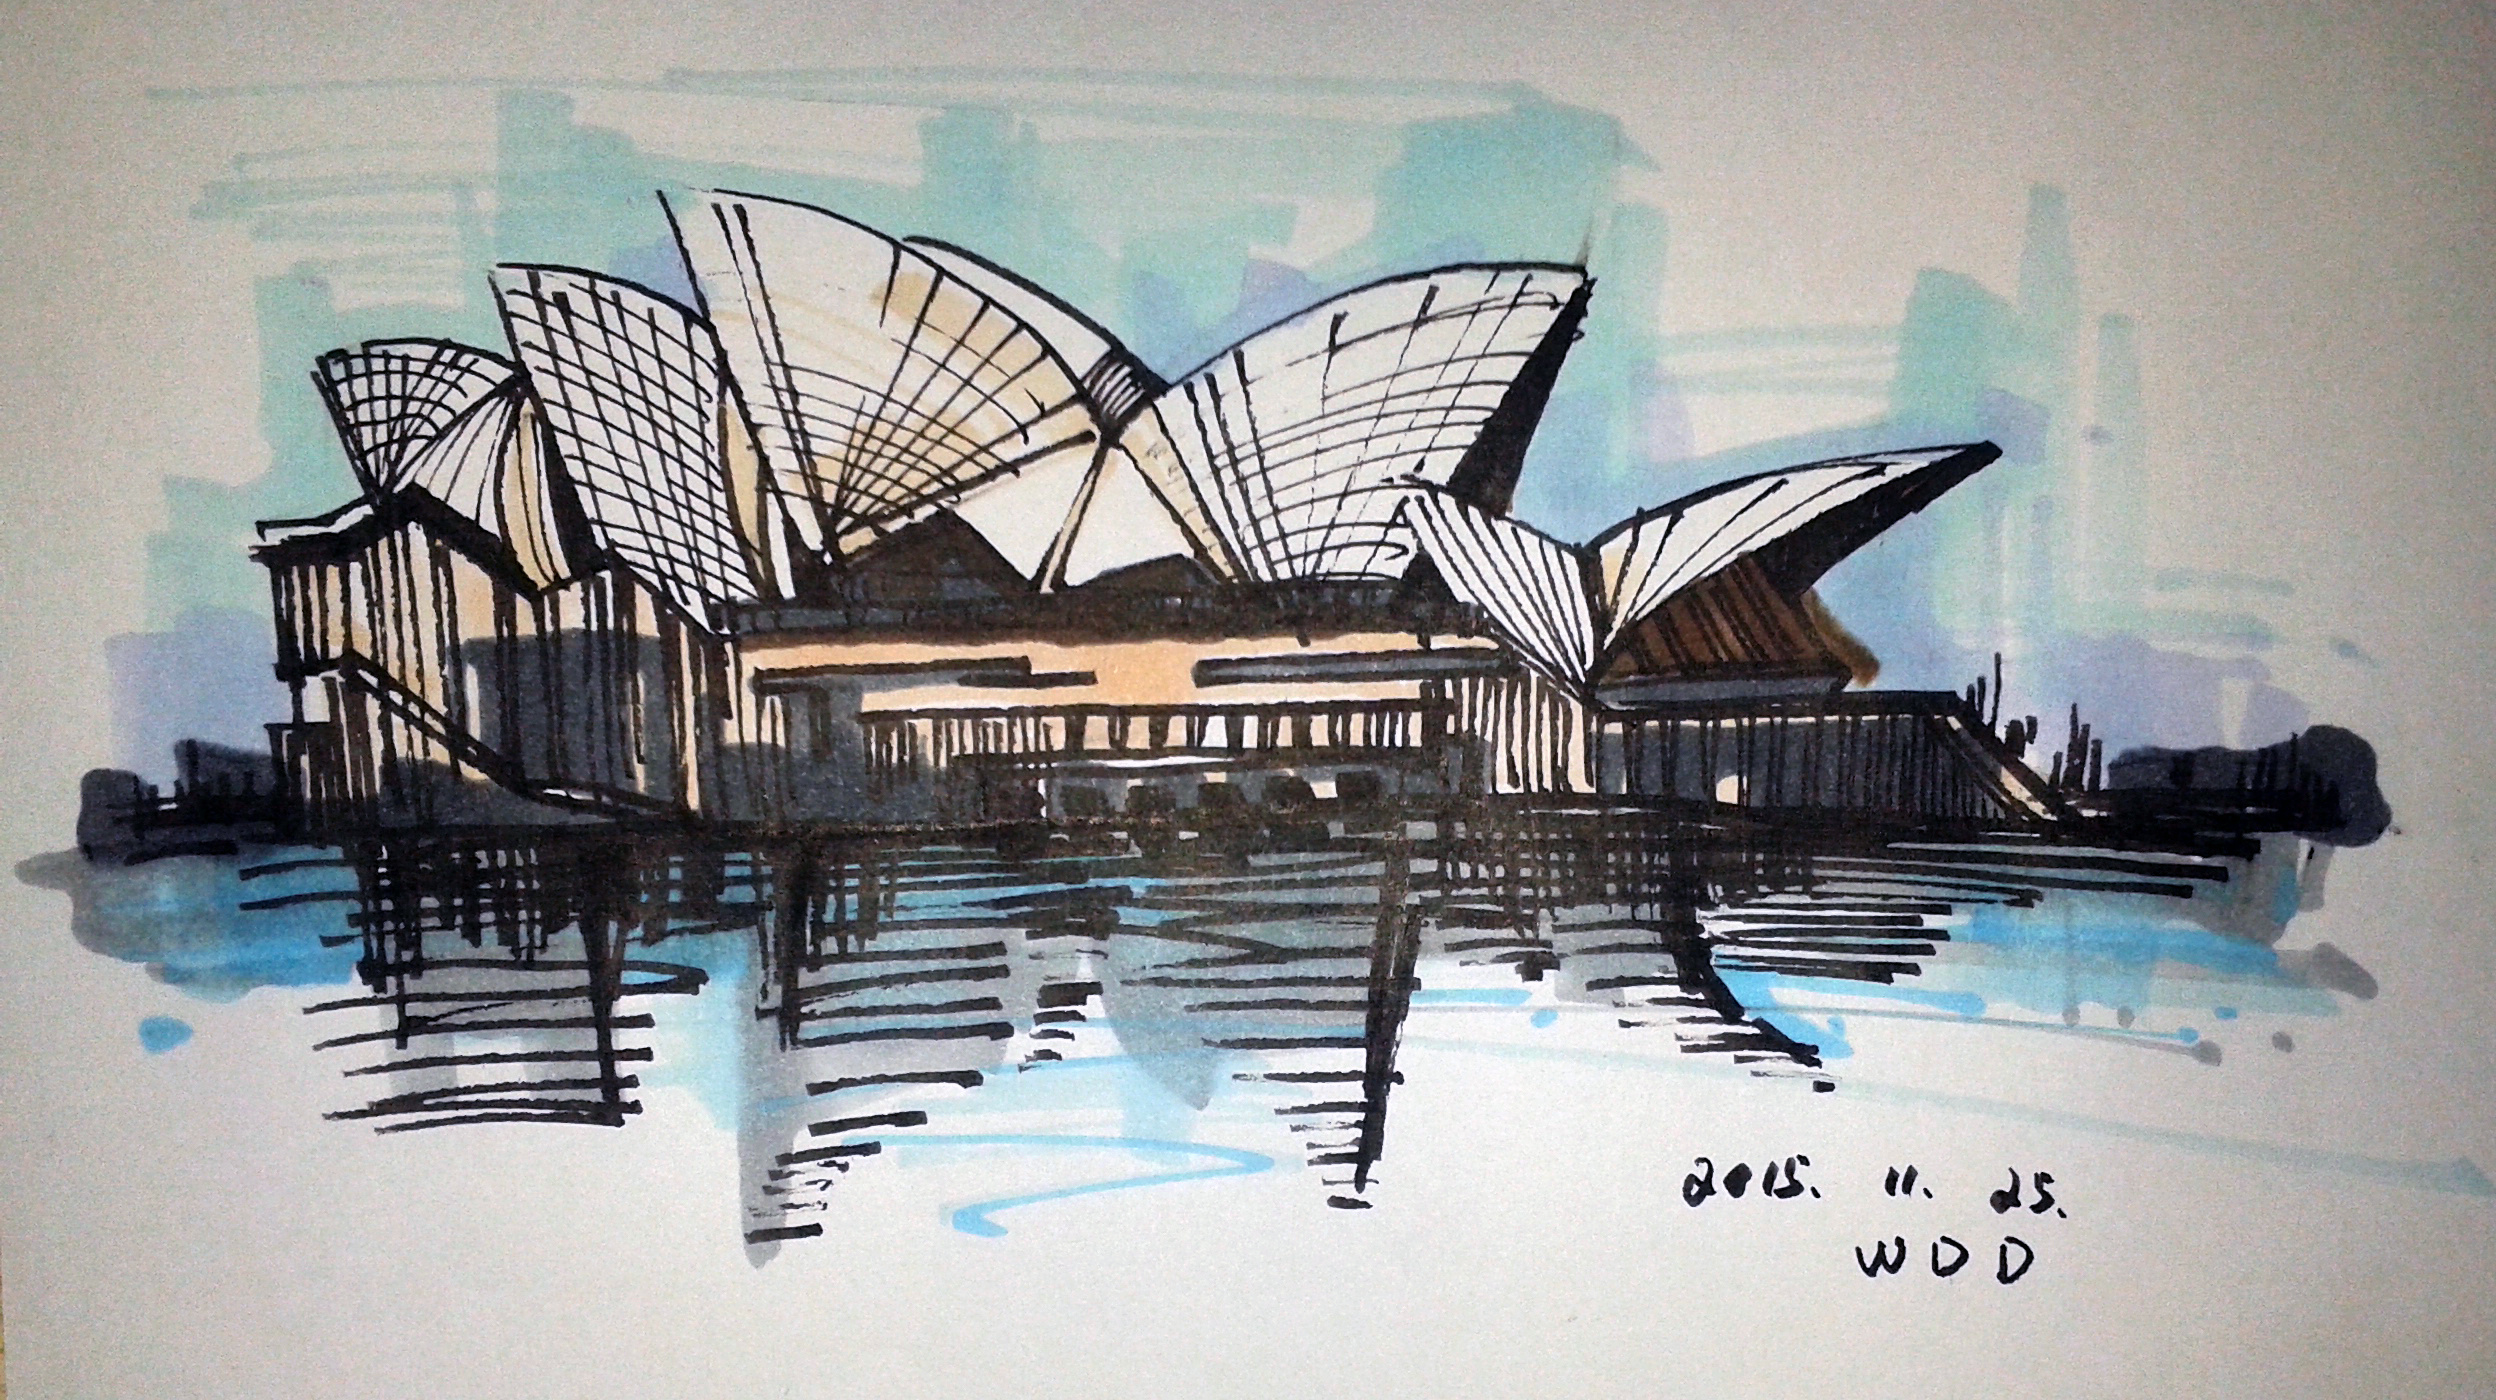 悉尼歌剧院怎么画简单图片